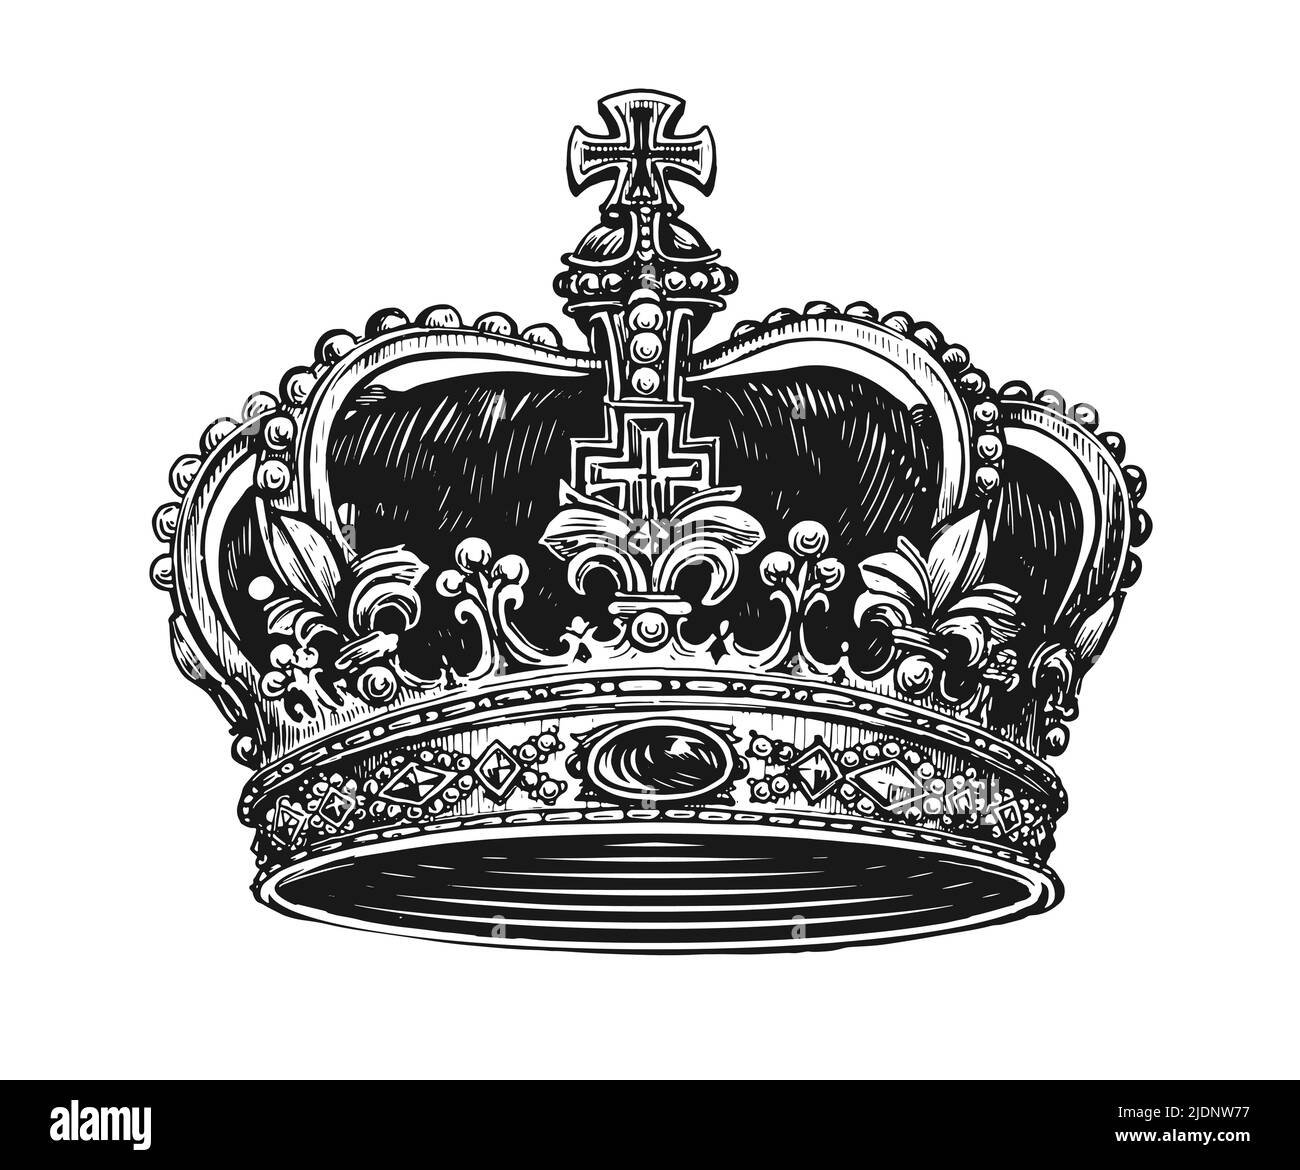 Vecteur couronne de roi. Dessin dessiné à la main, illustration vintage gravée Illustration de Vecteur